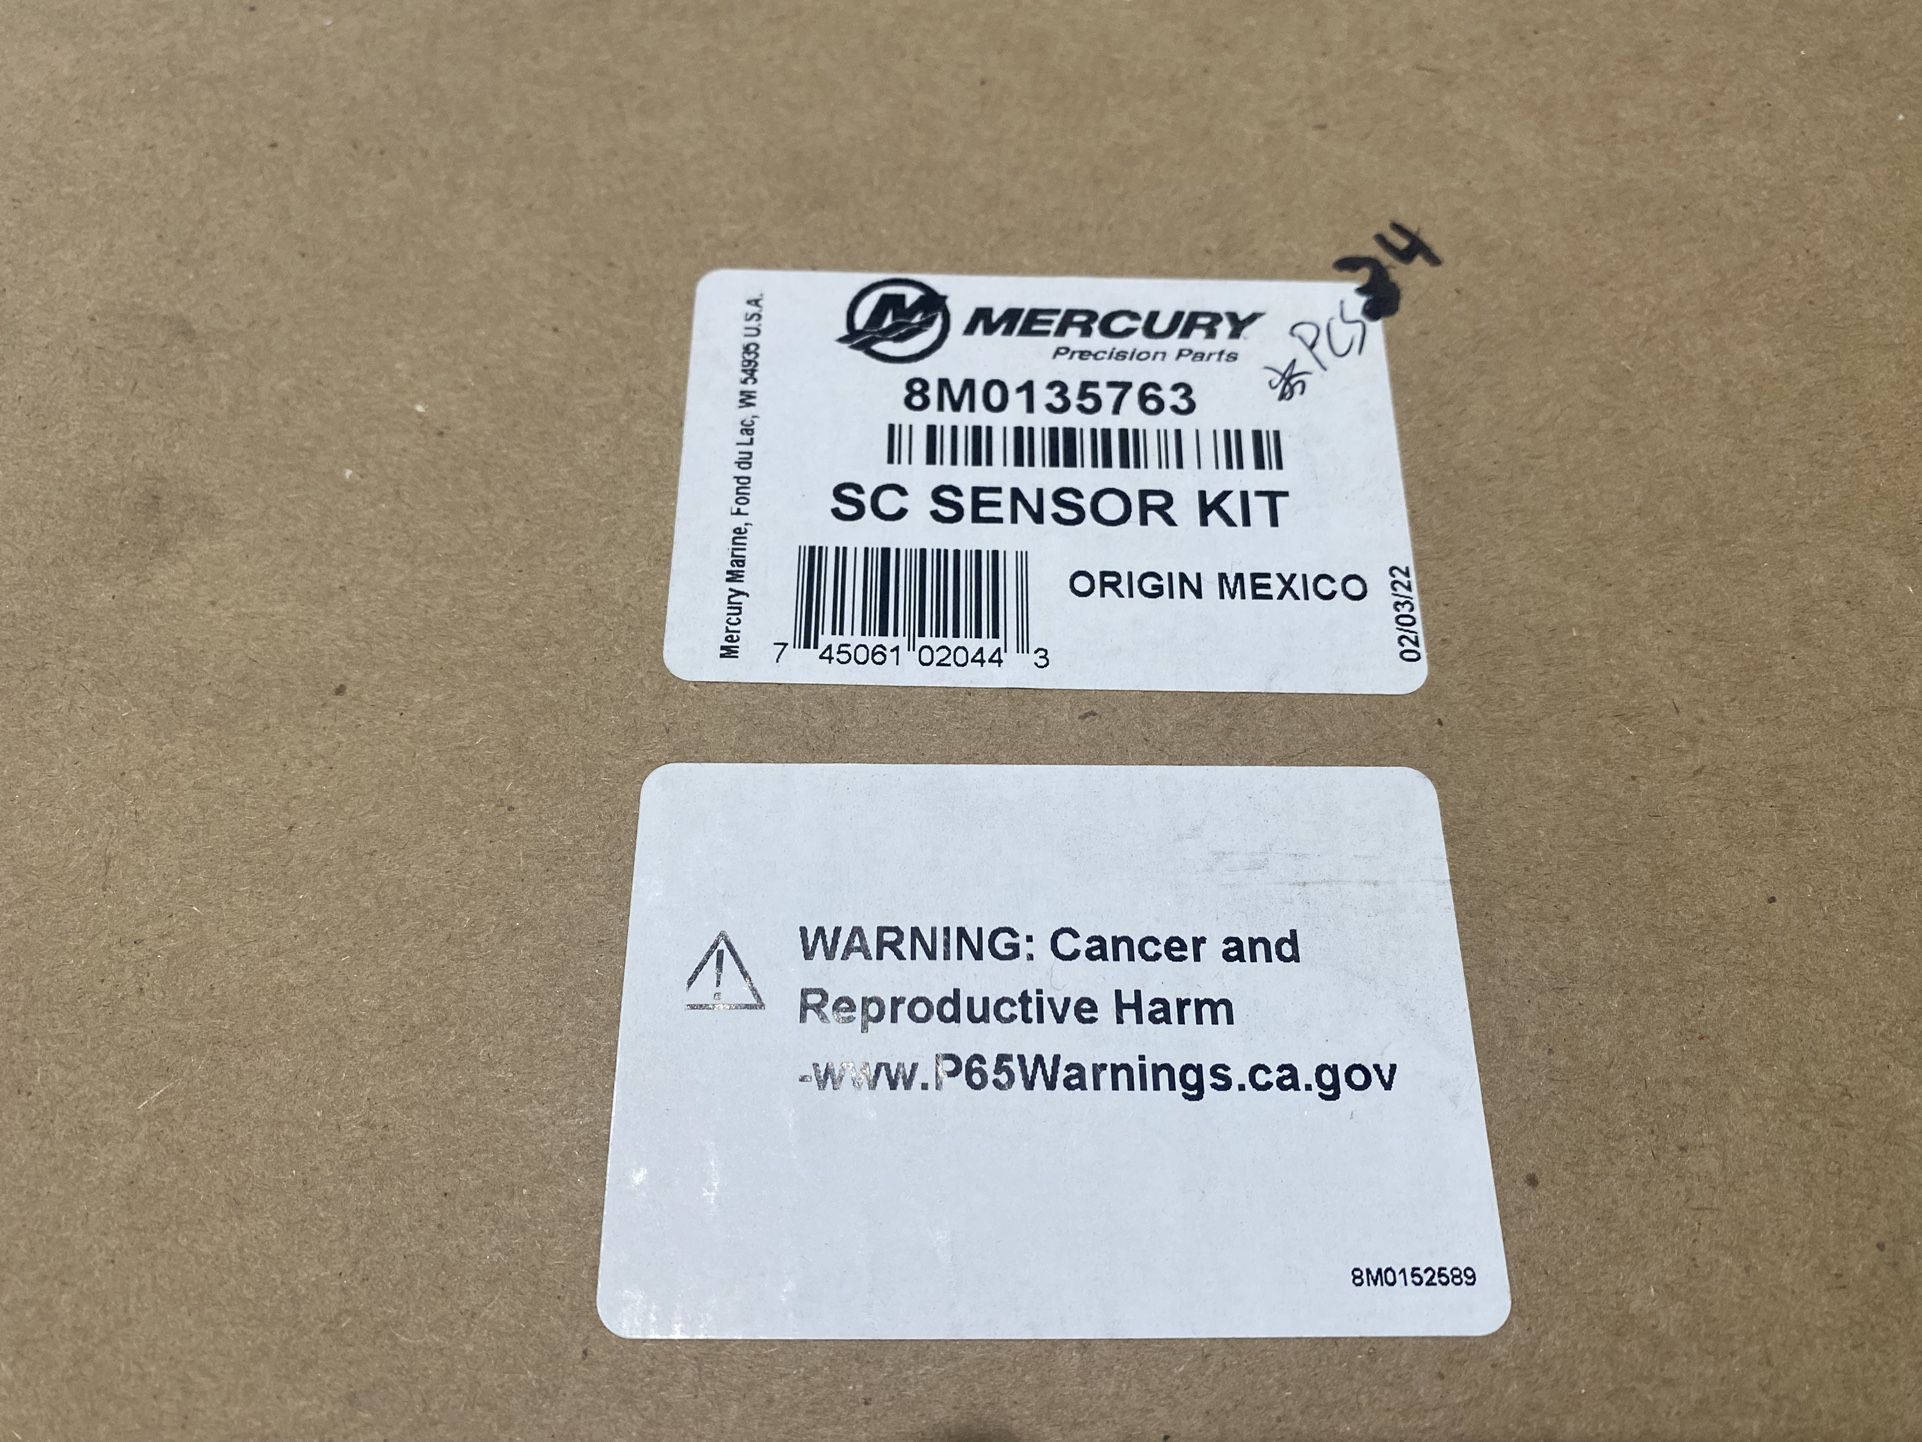 Mercury SC Sensor Kit, 8M0135763